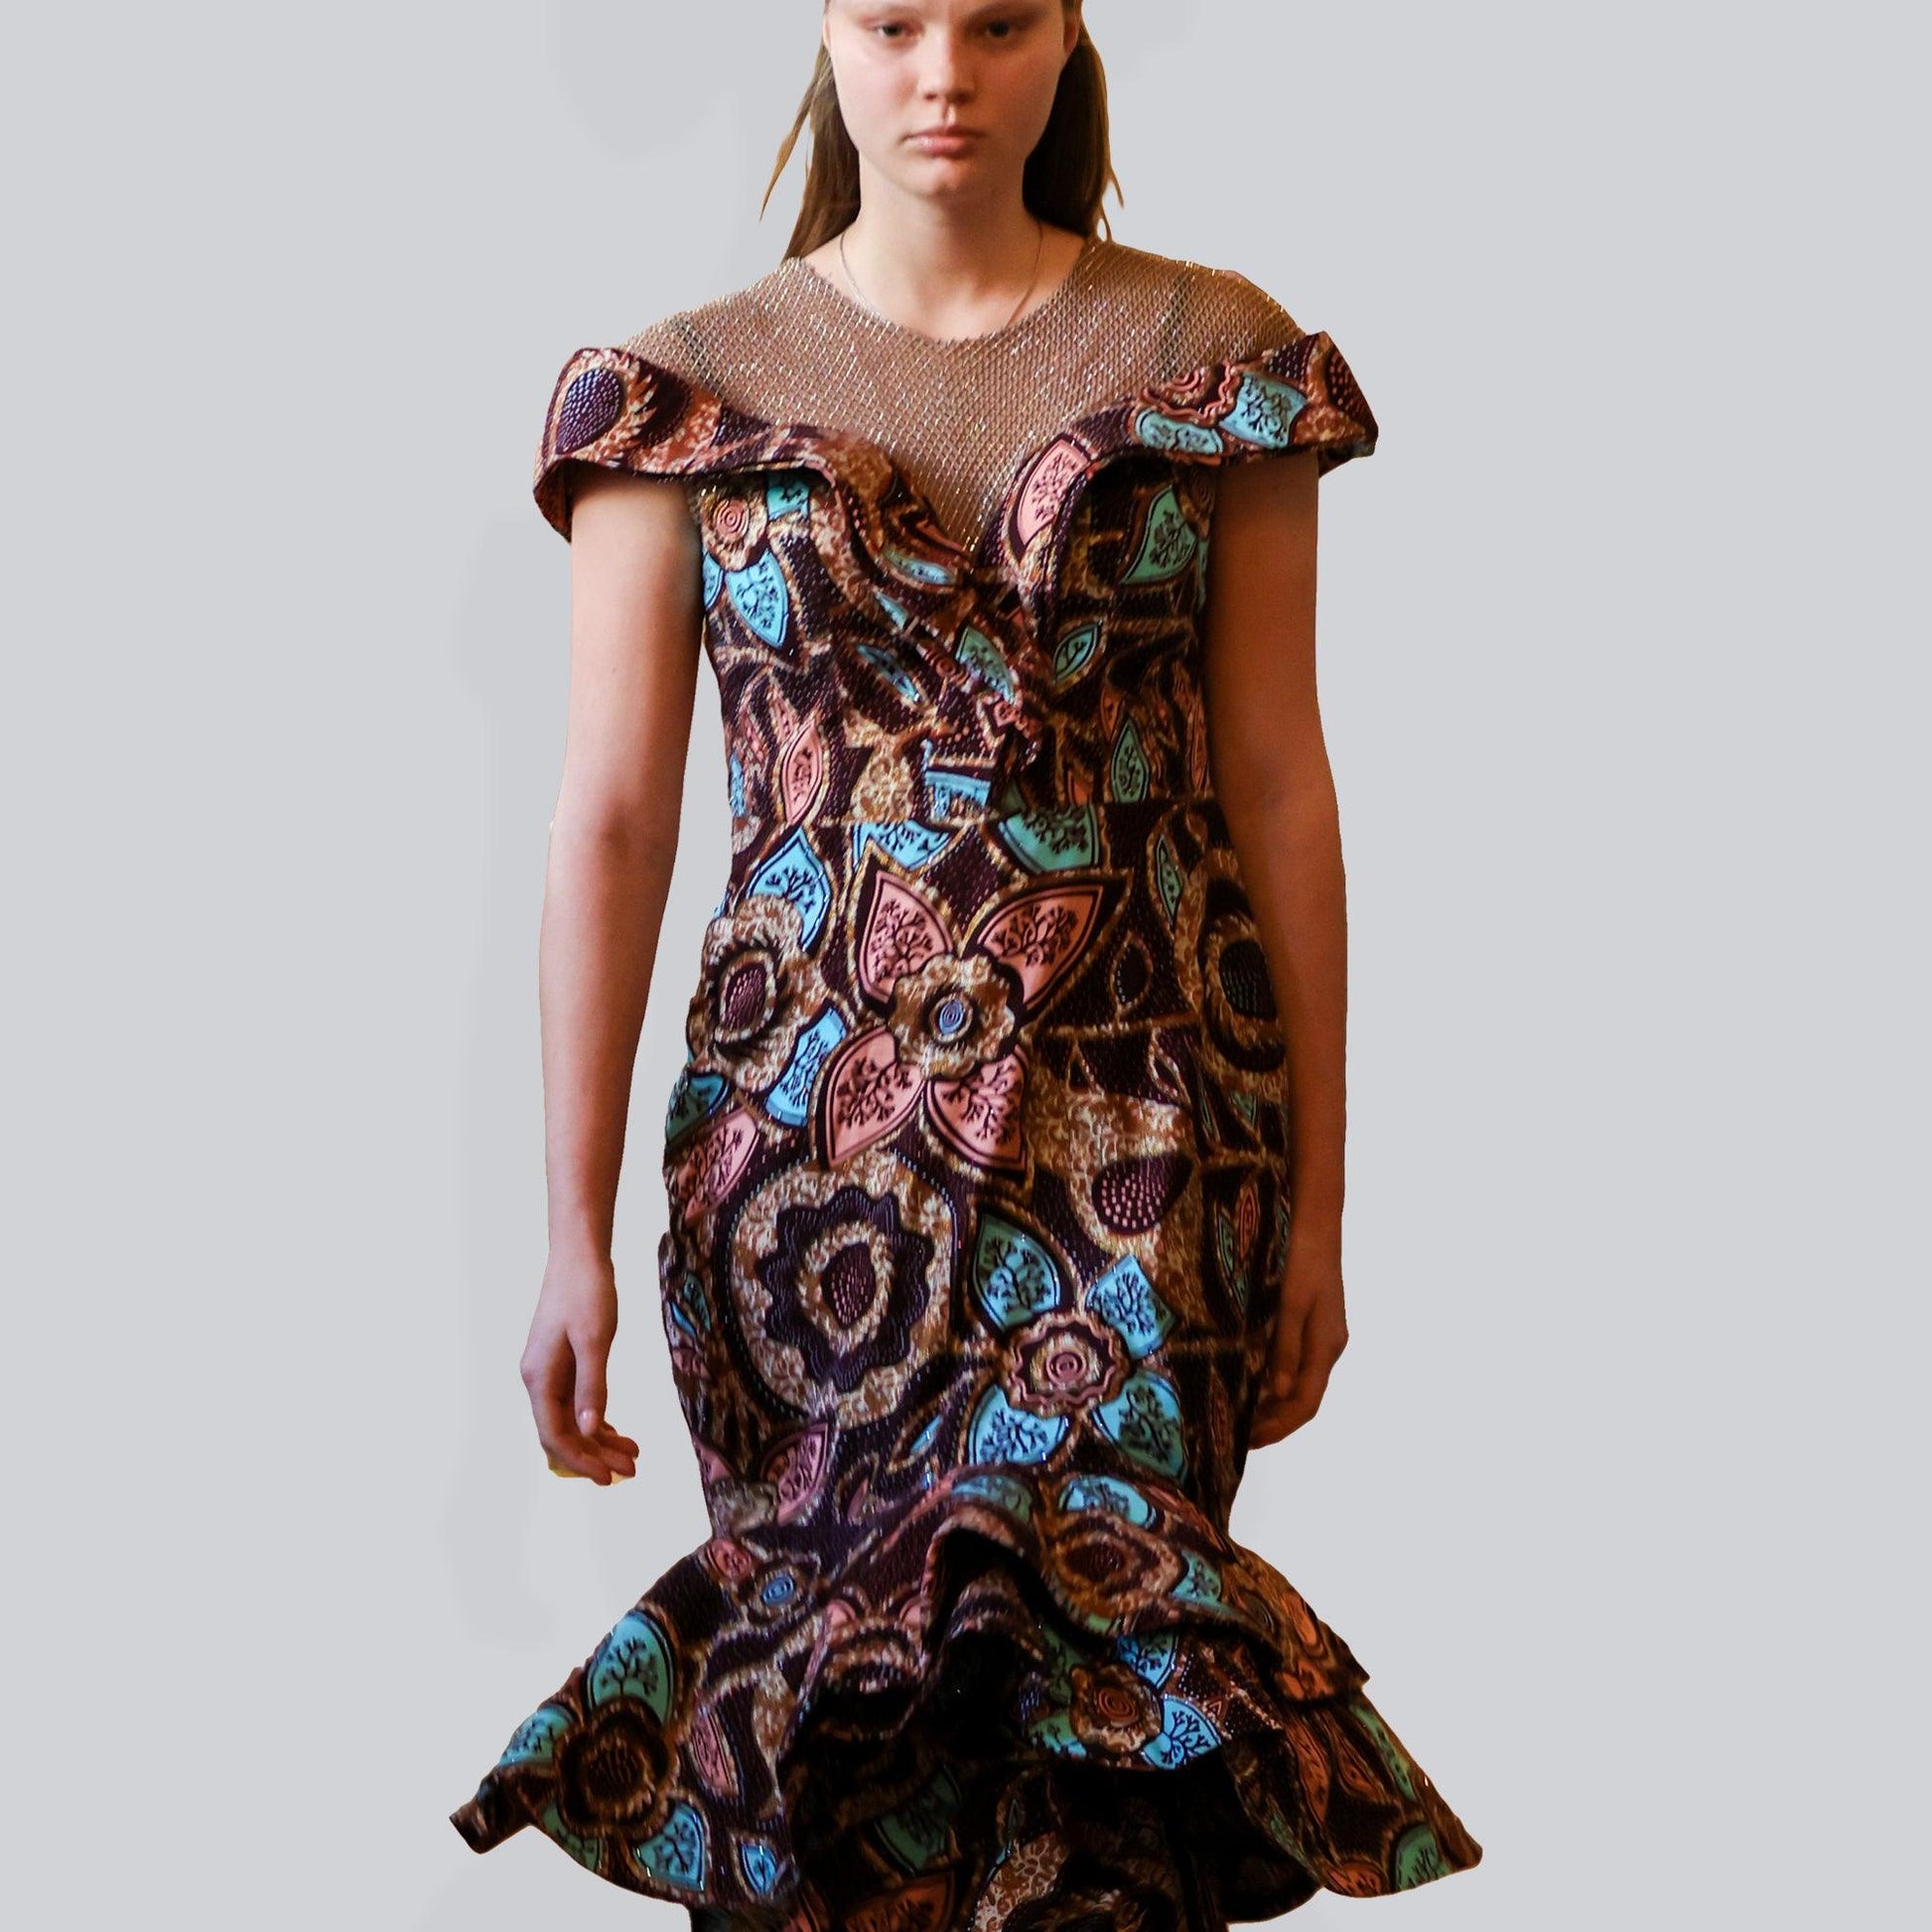 Kofo gown - Paris Fashion Week